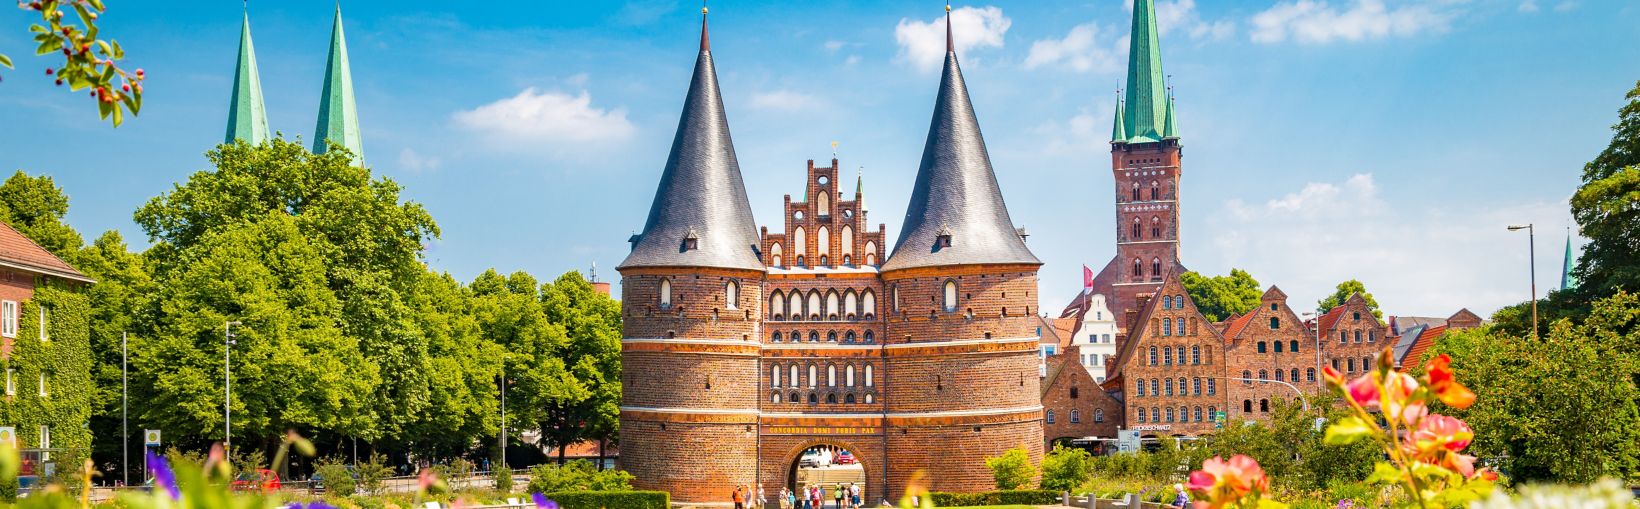 Ville historique de Lübeck avec la célèbre porte Holstentor en été, Schleswig-Holstein, nord de l’Allemagne